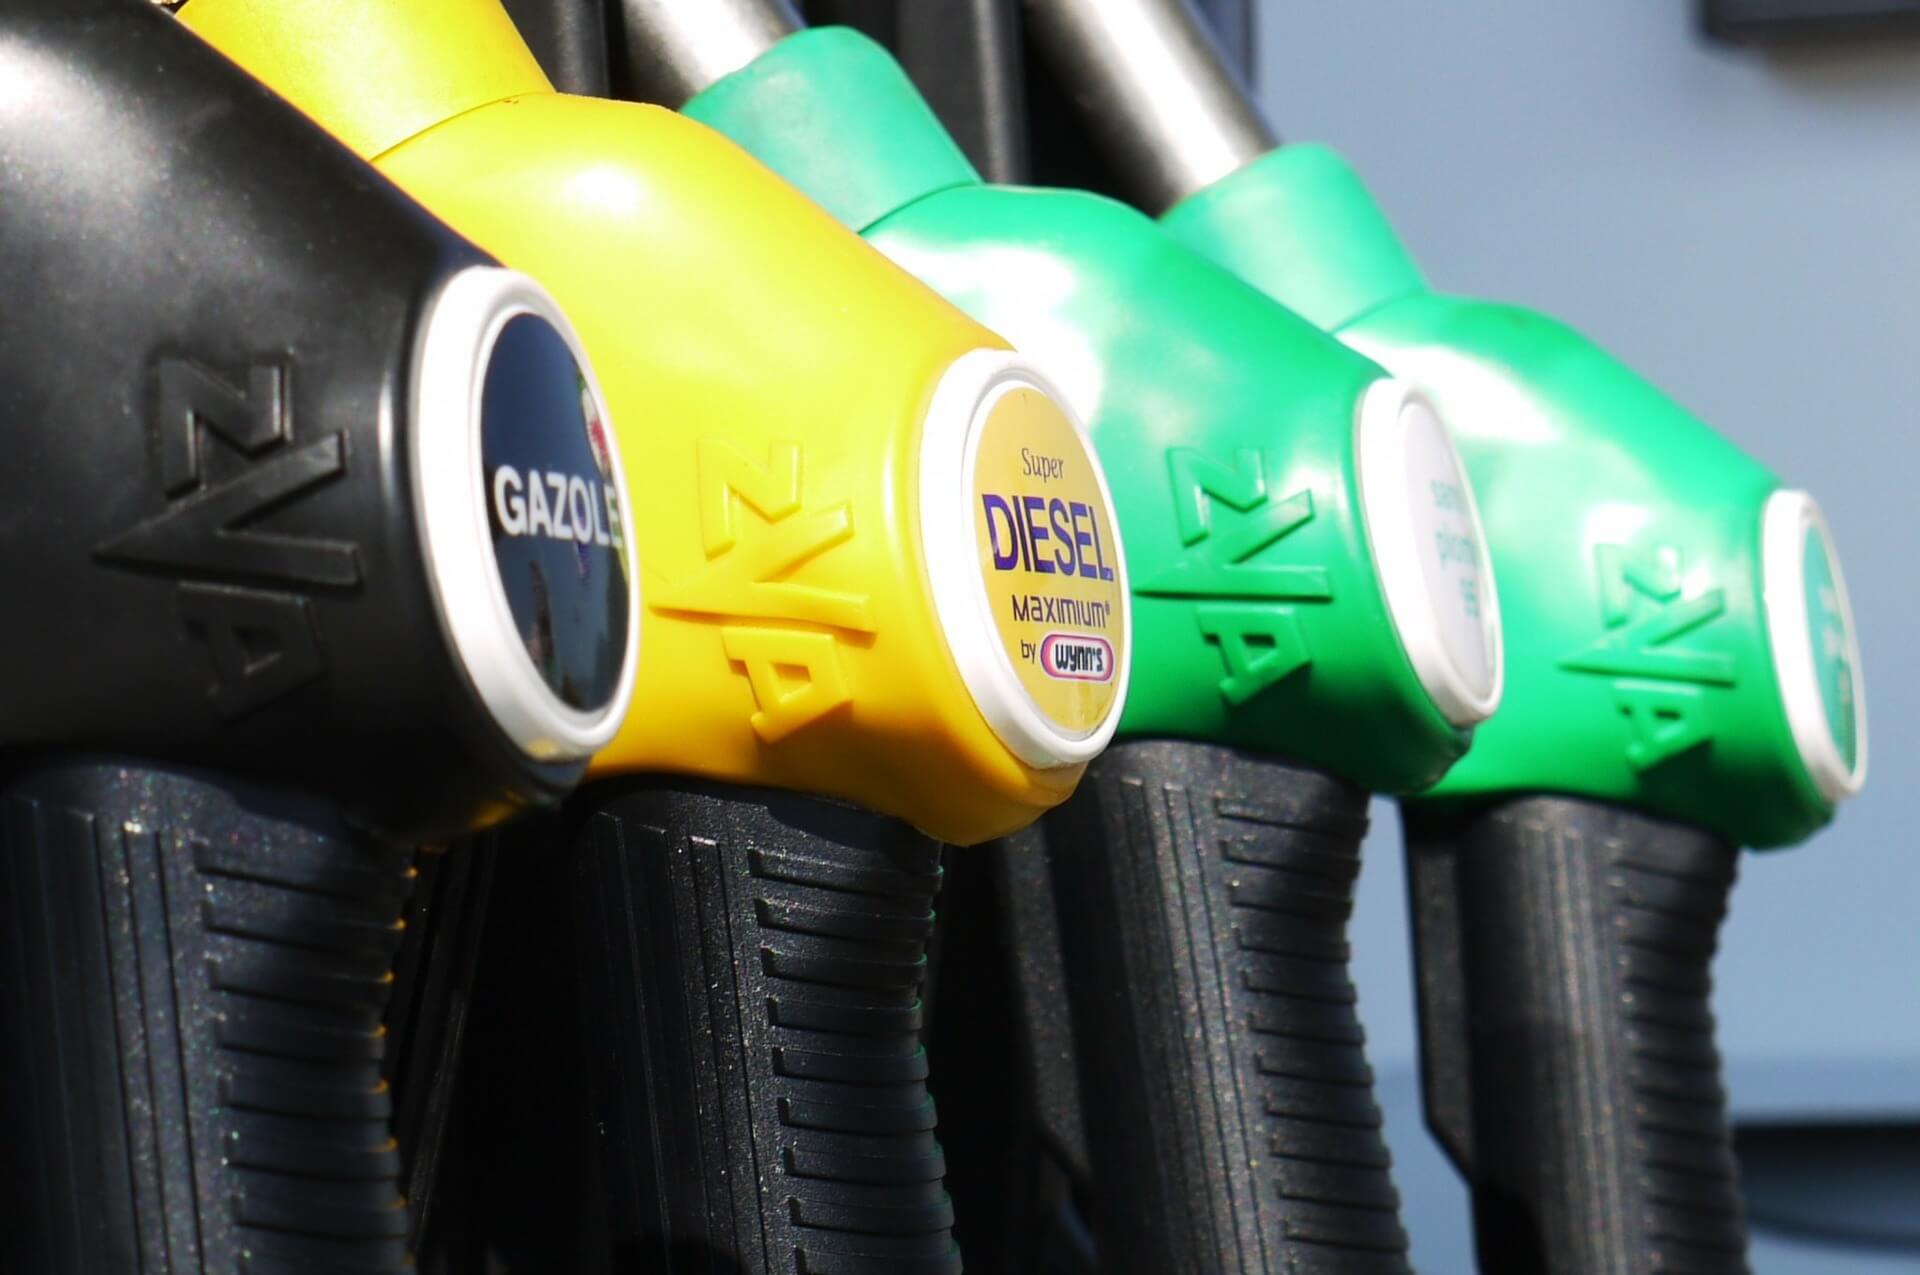 quatro mangueiras de combustível estão dispostas em sequência, no que parece ser um posto de abastecimento. Uma delas é preta, outra é amarela e as duas à direita são verdes